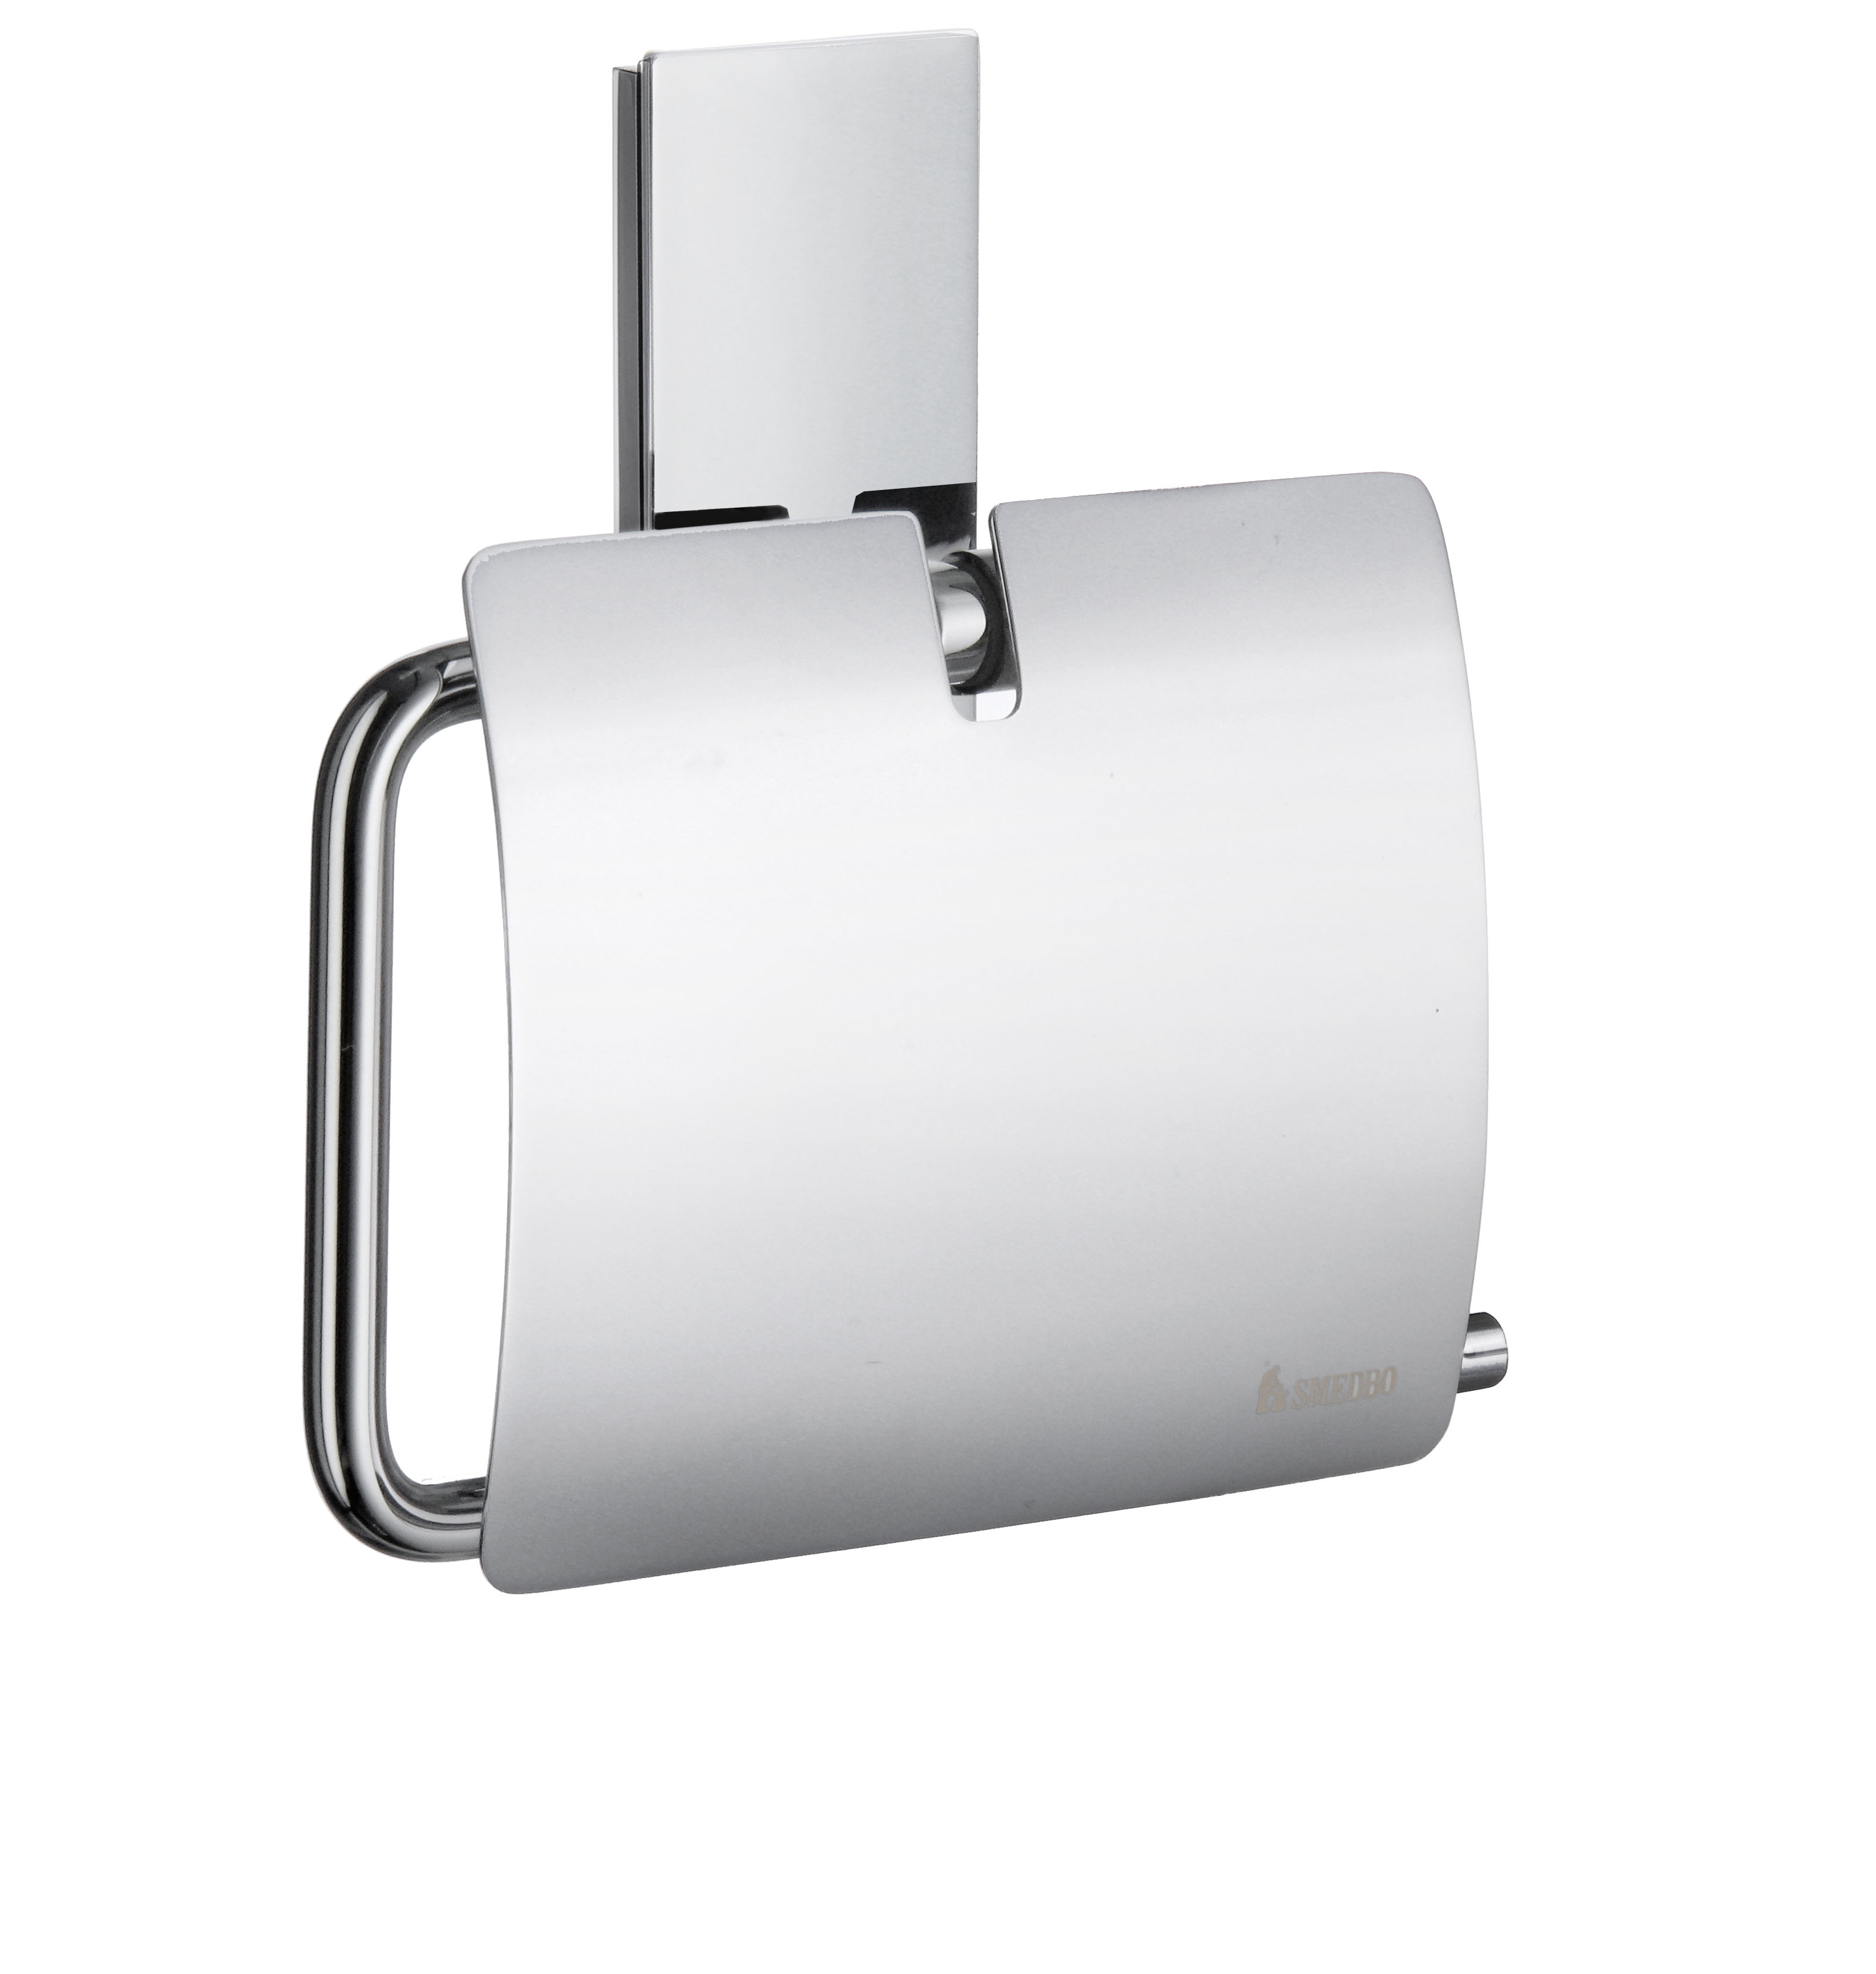 Smedbo House Toilettenpierhalter mit Deckel RS3414 chrom matt WC Rollenhalter 